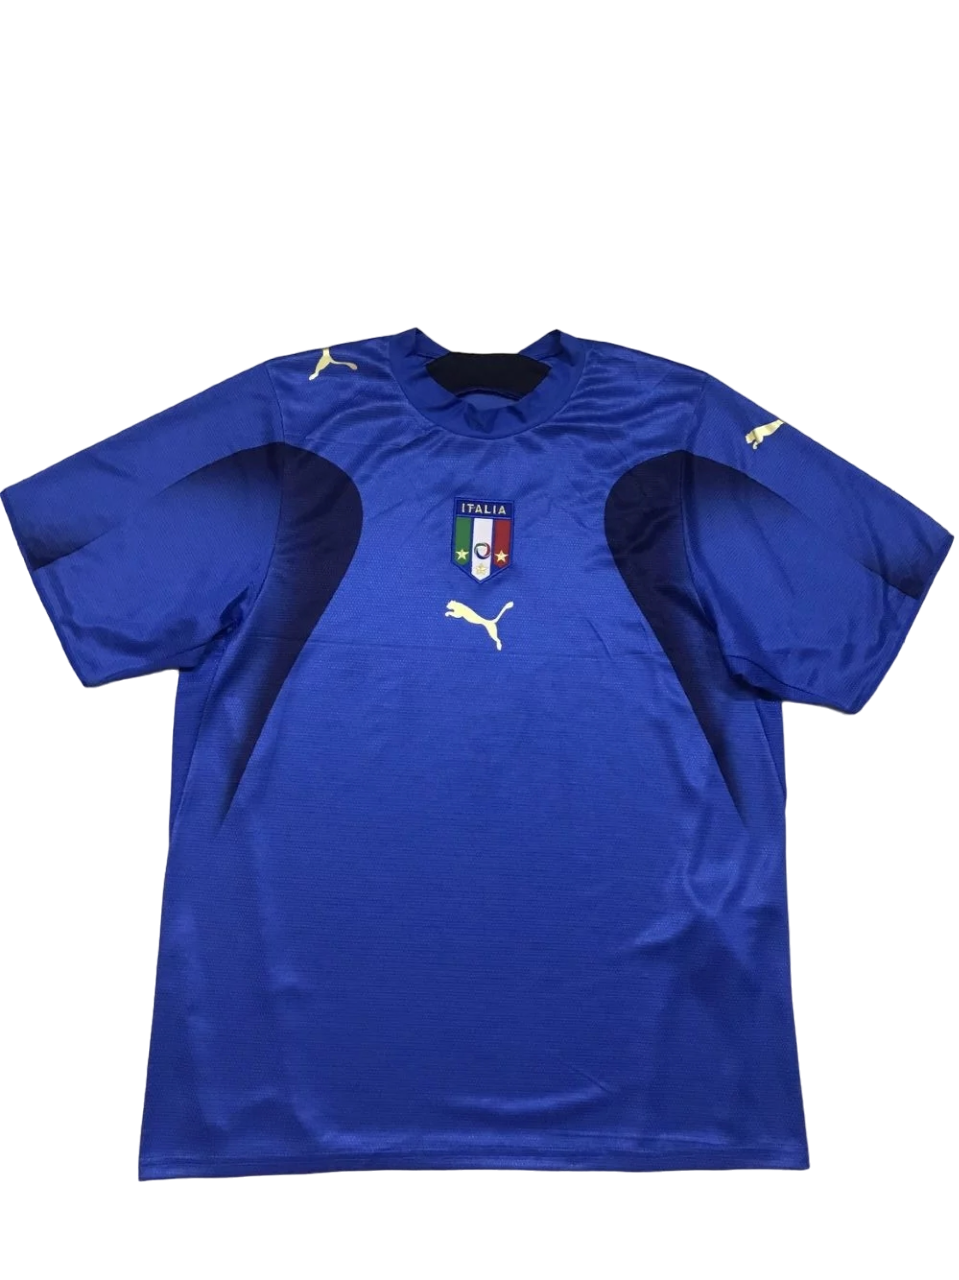 Italy shirt 2006